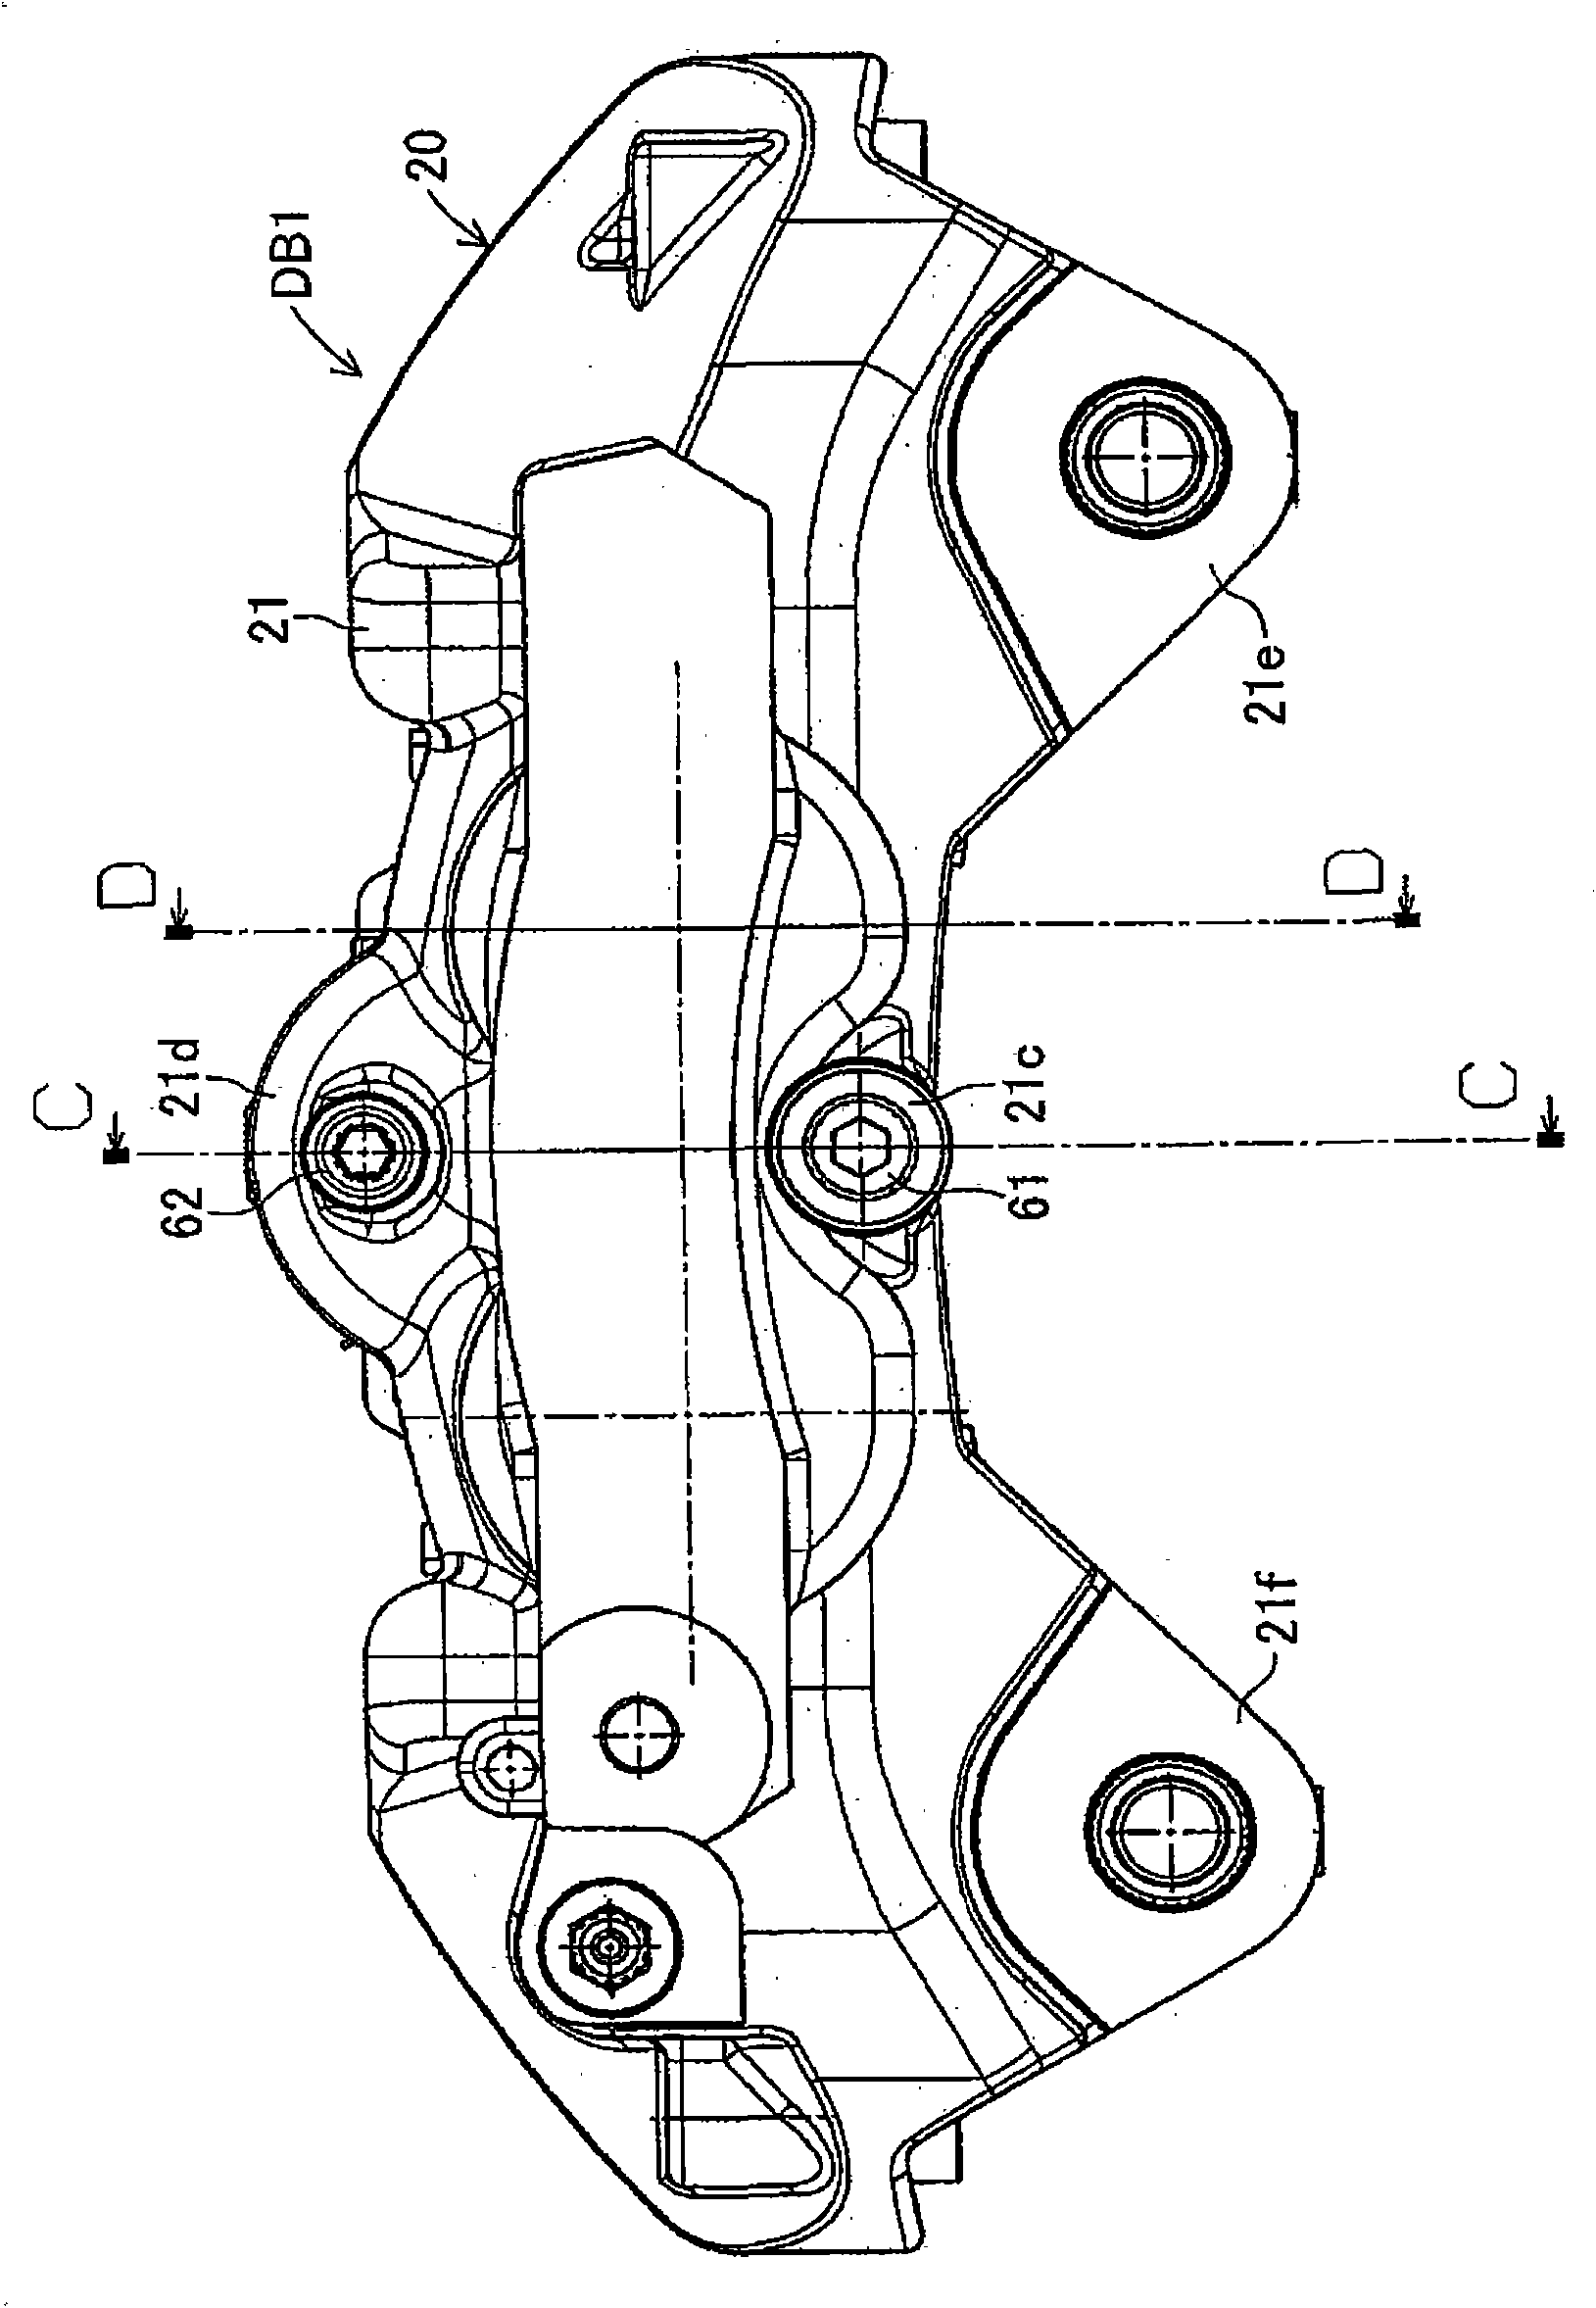 Disc brake apparatus